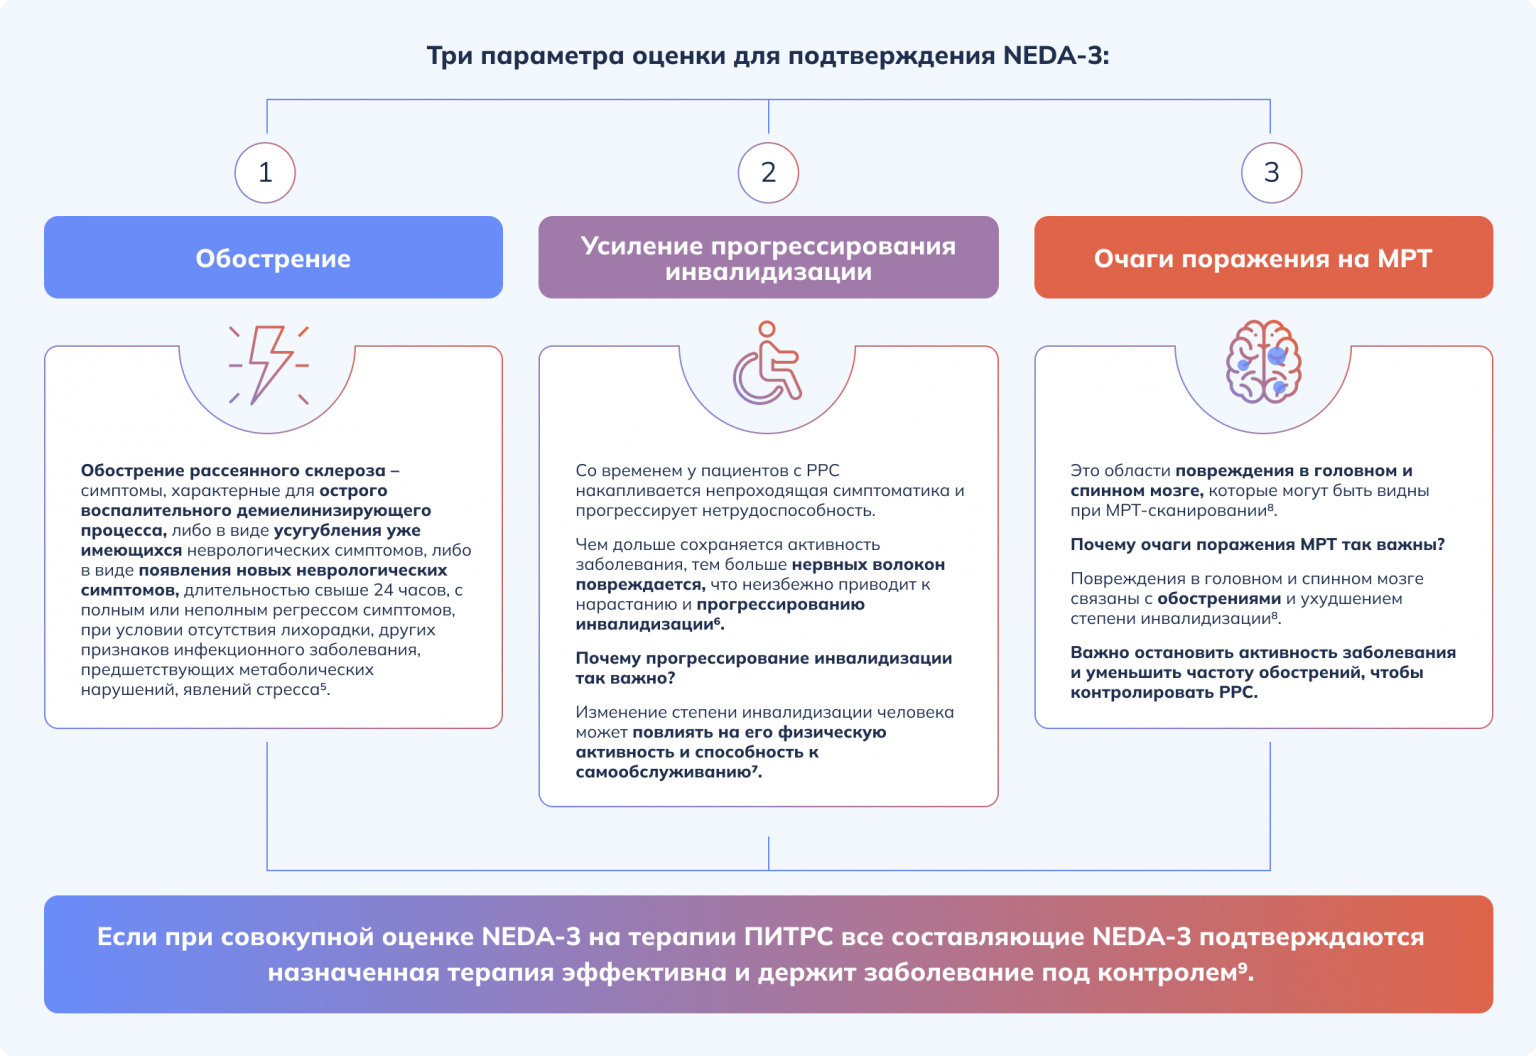 NEDA-3*: Отстутствие признаков активности заболевания